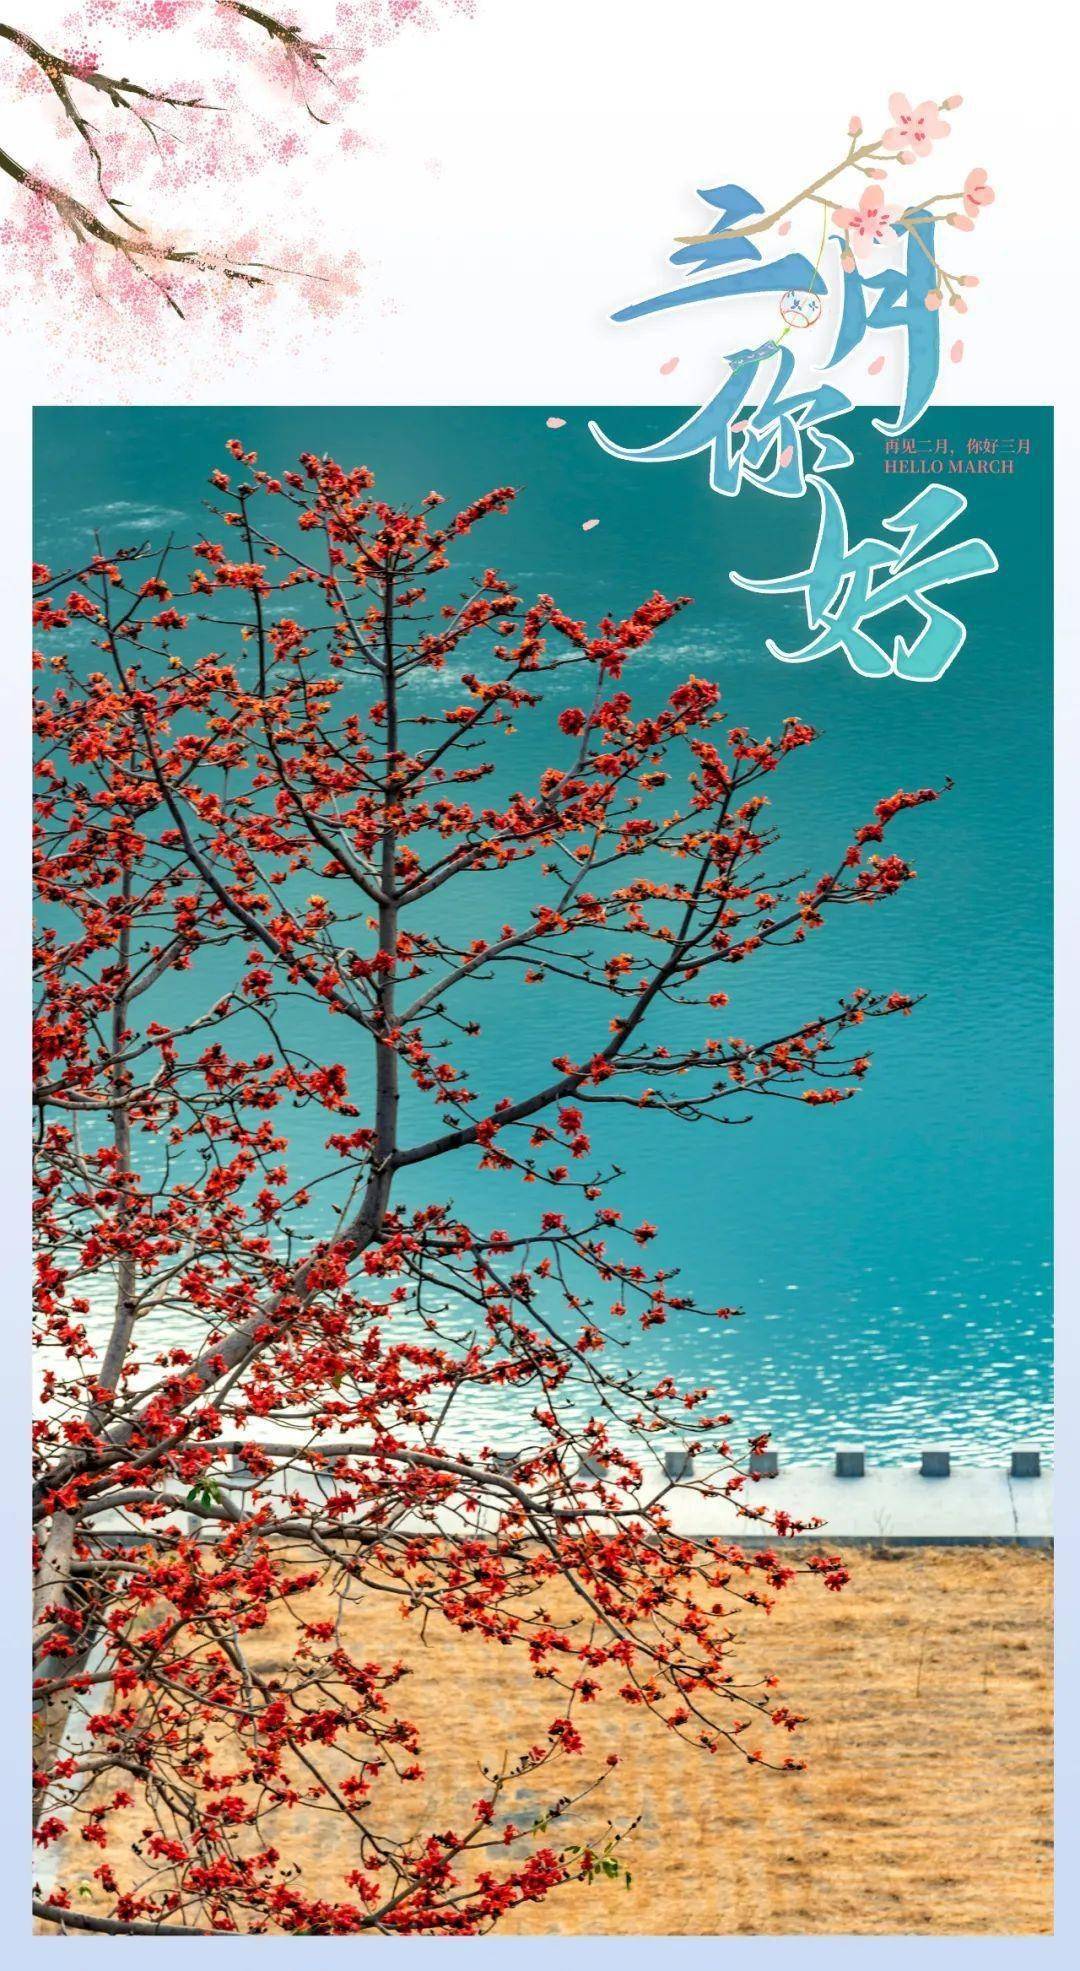 请查收！攀枝花寄向春天的明信片